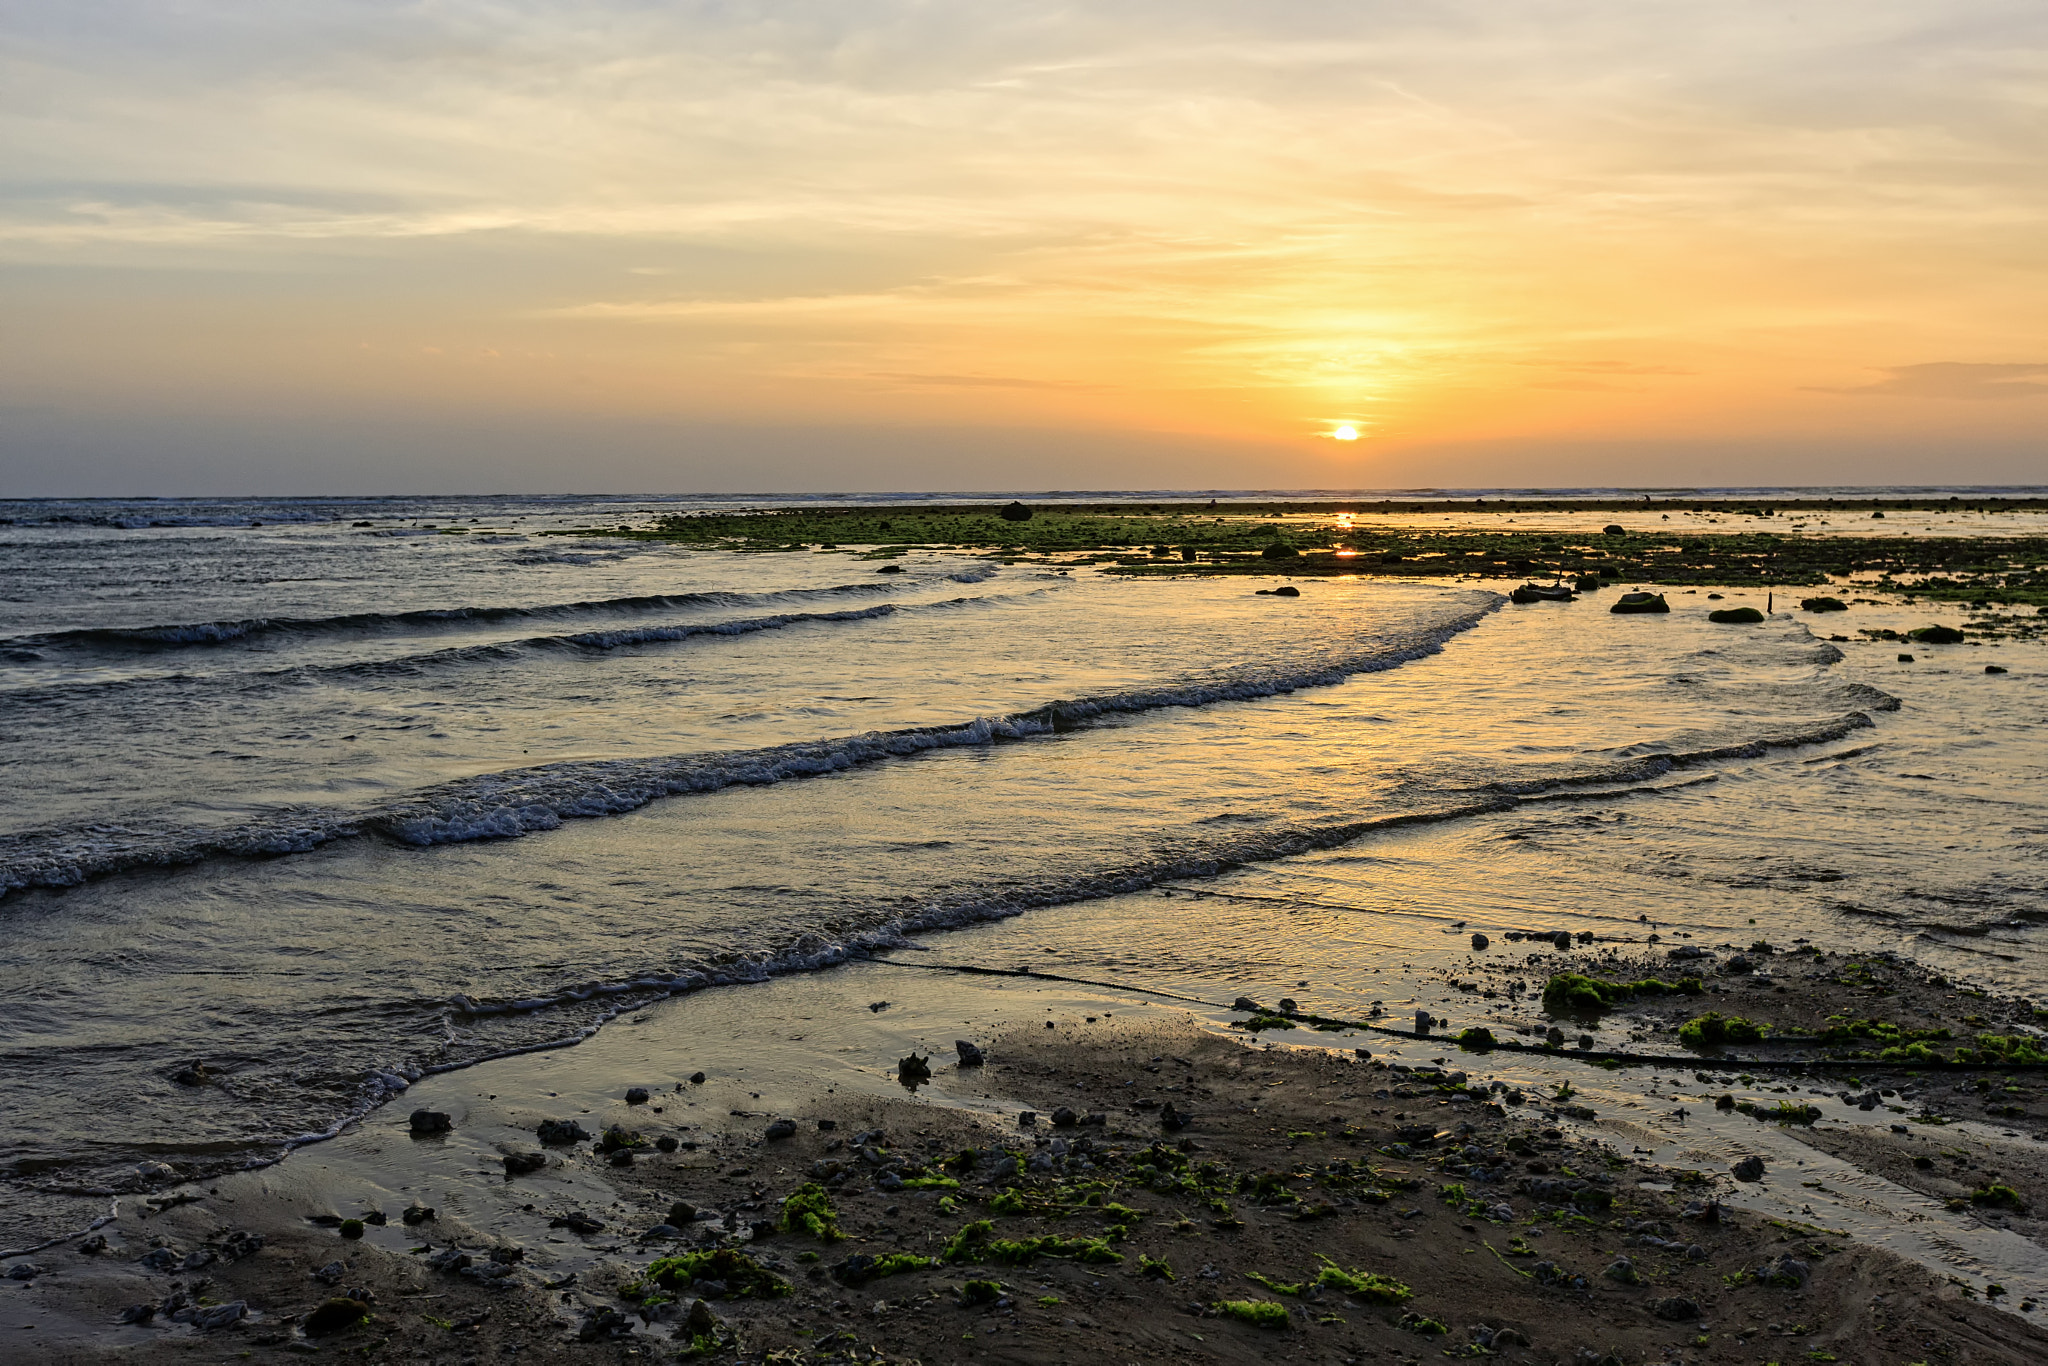 Canon EOS-1Ds Mark III sample photo. Sunrise on deserted beach photography